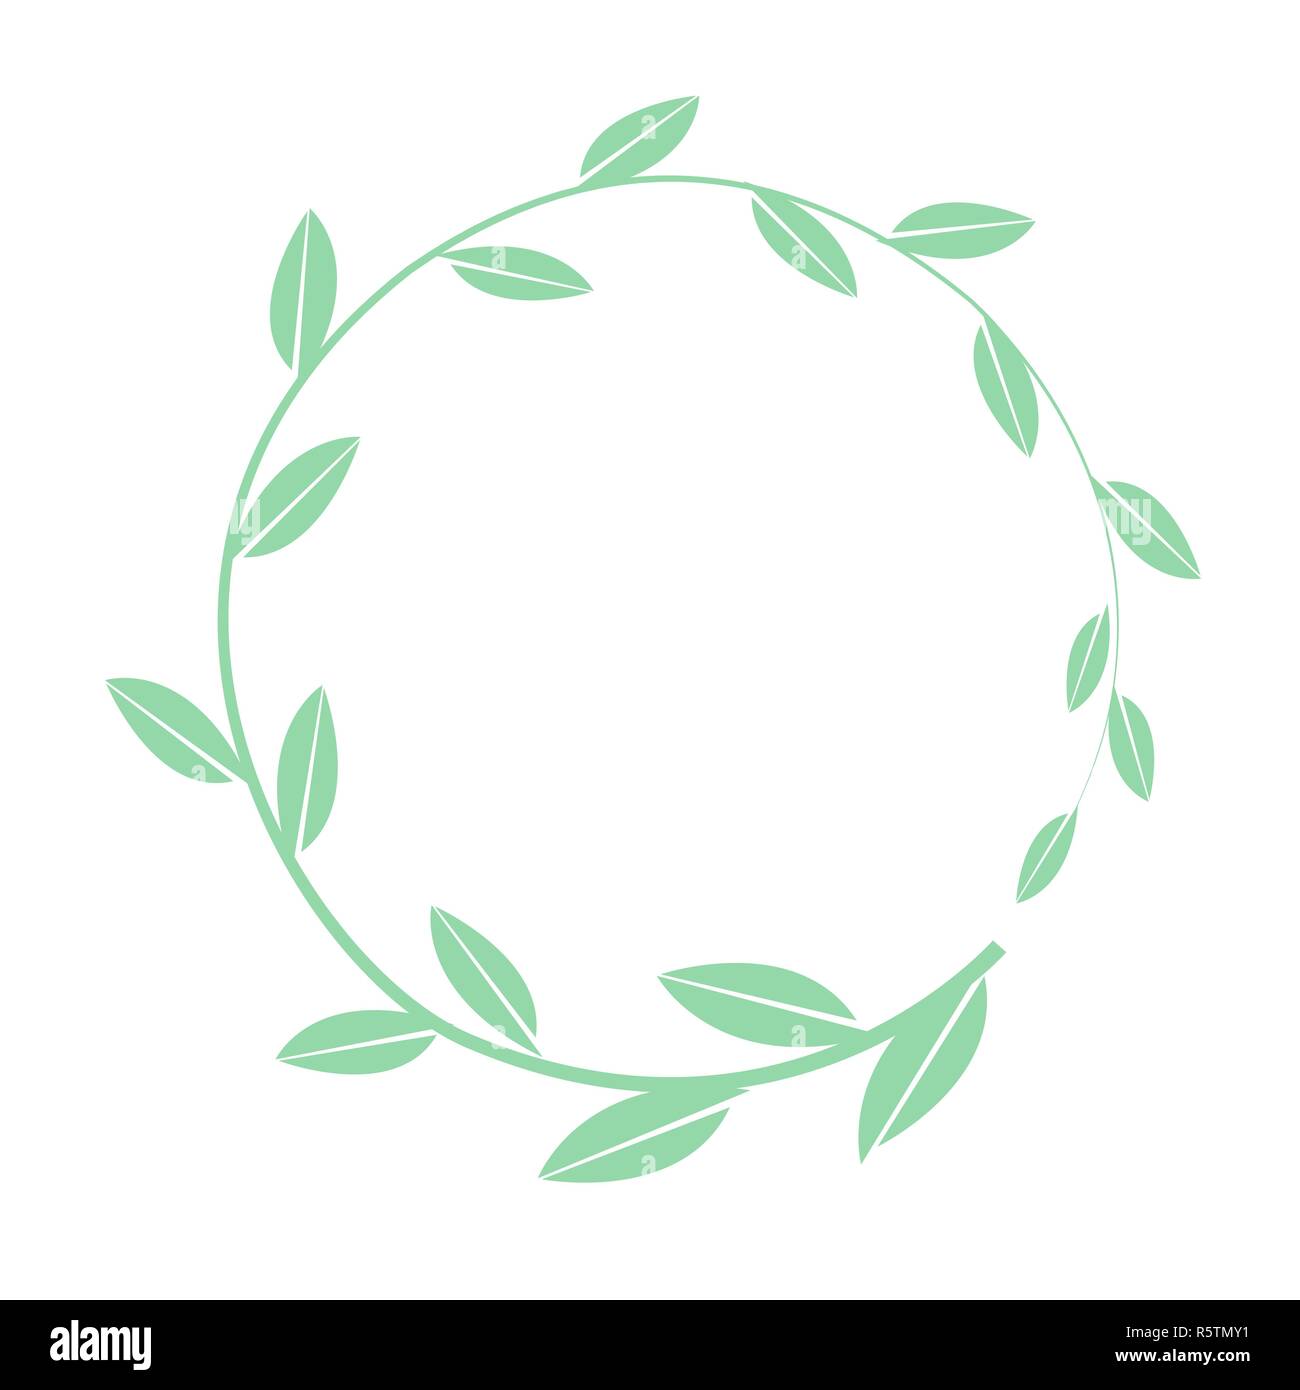 Disegnata a mano vector cornice rotonda. Ghirlanda floreale con foglie di semplice banco. Elementi decorativi per la progettazione Illustrazione Vettoriale